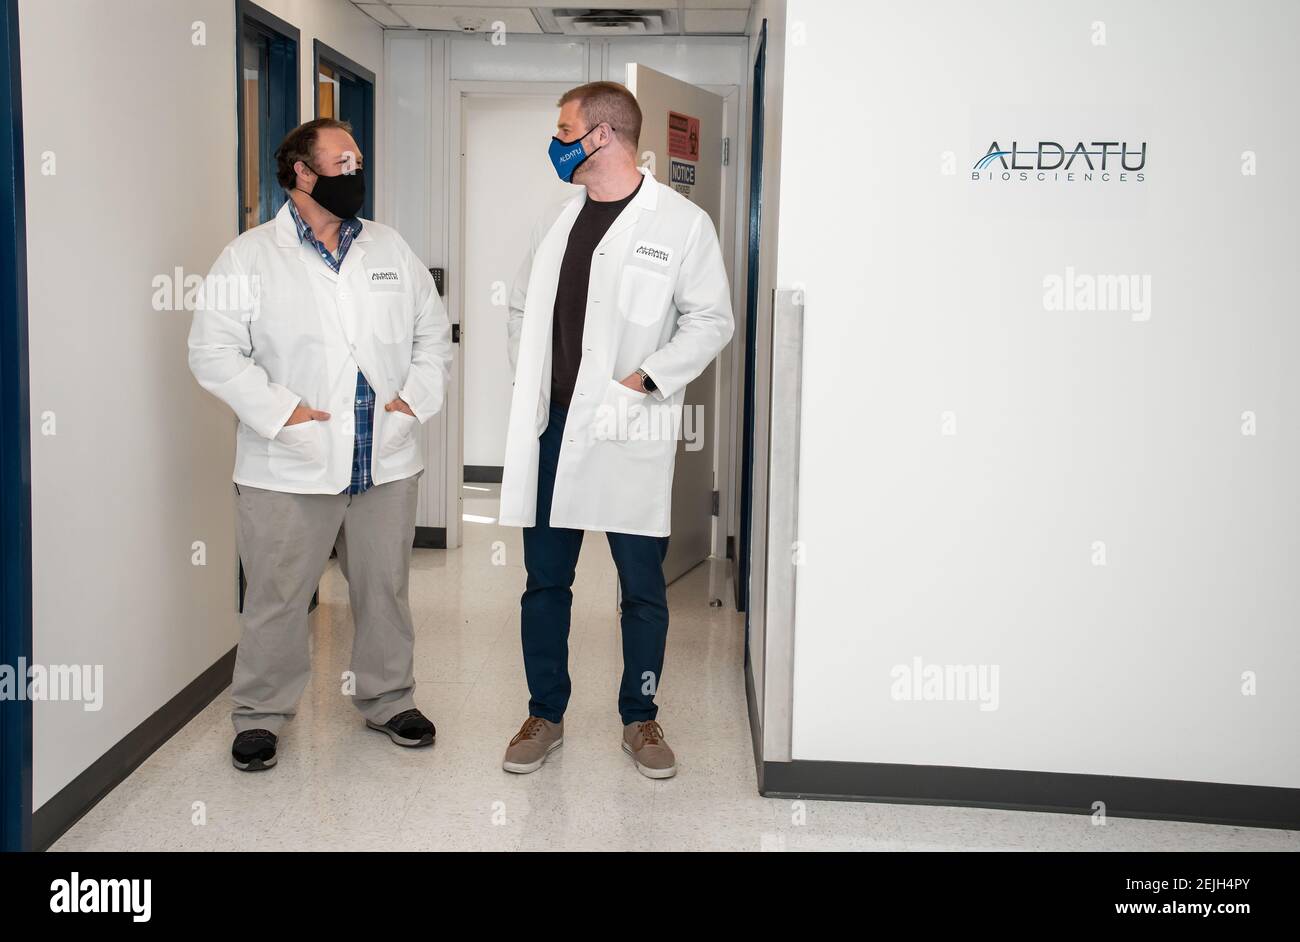 Aldatu Biosciences in Watertown, ha sviluppato un test rapido per il rilevamento COVID-19 chiamato PANDAA QDX™ SARS-COV-2 utilizzato a Boston. Foto Stock